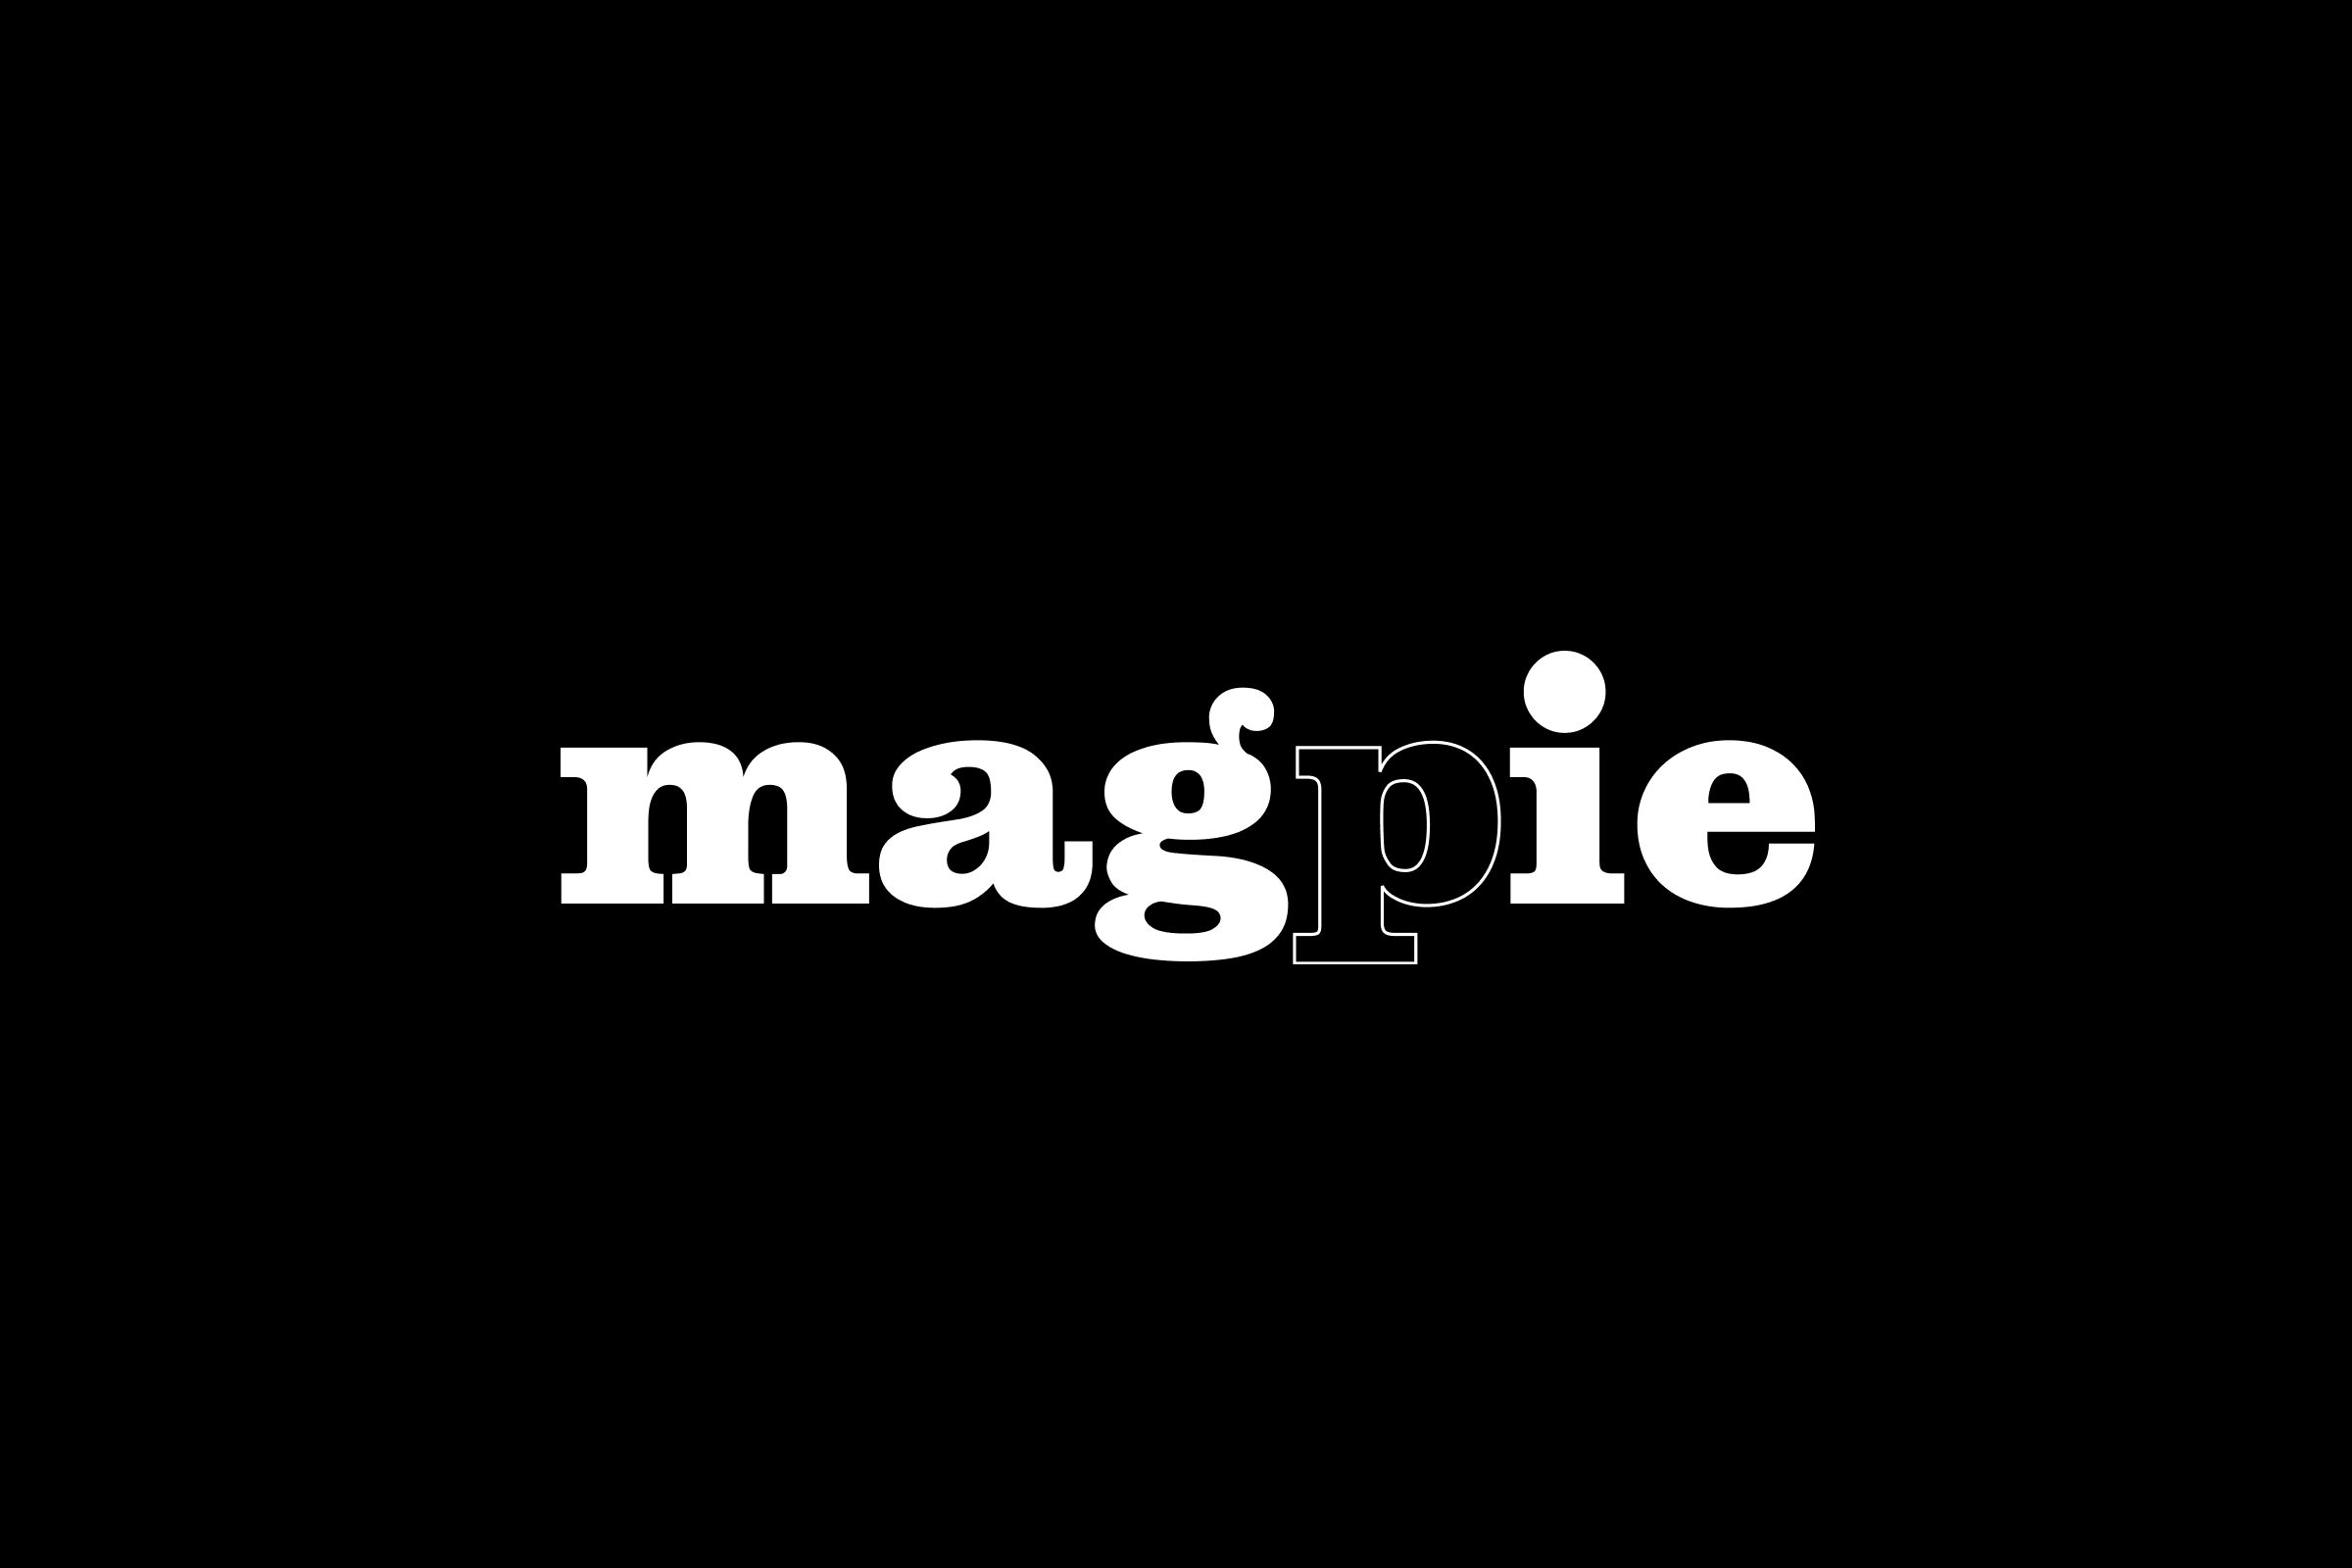 simon-p-coyle-branding-logo-design-2010-magpie